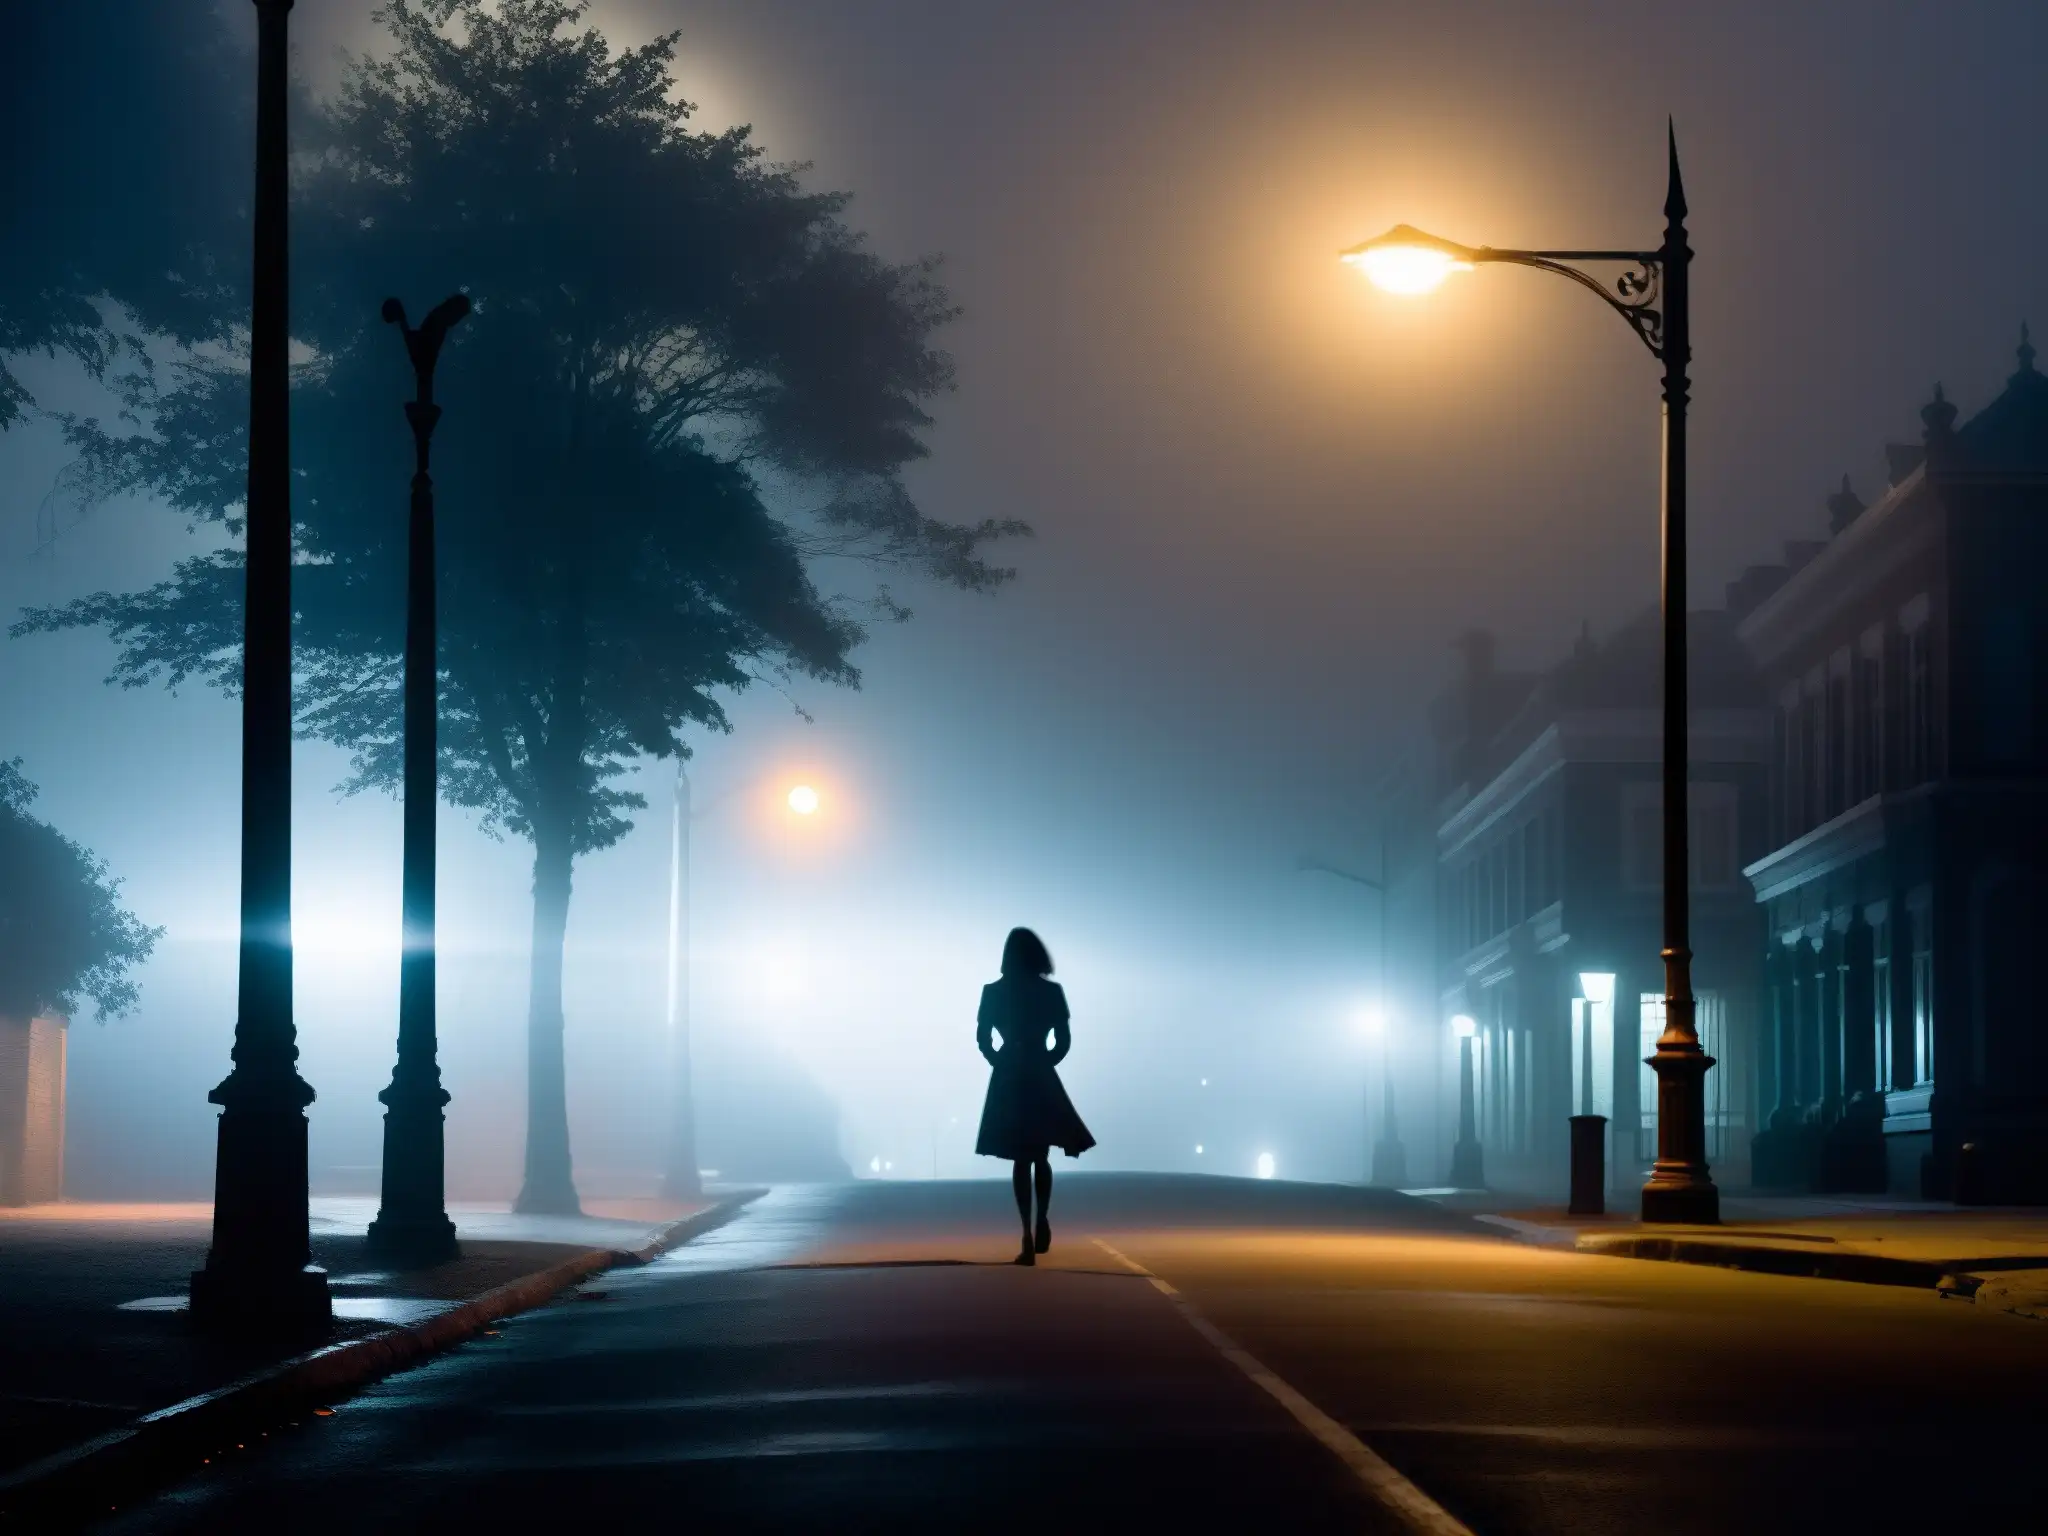 Una noche neblinosa y lúgubre en la ciudad, TekeTeke acecha bajo una farola parpadeante